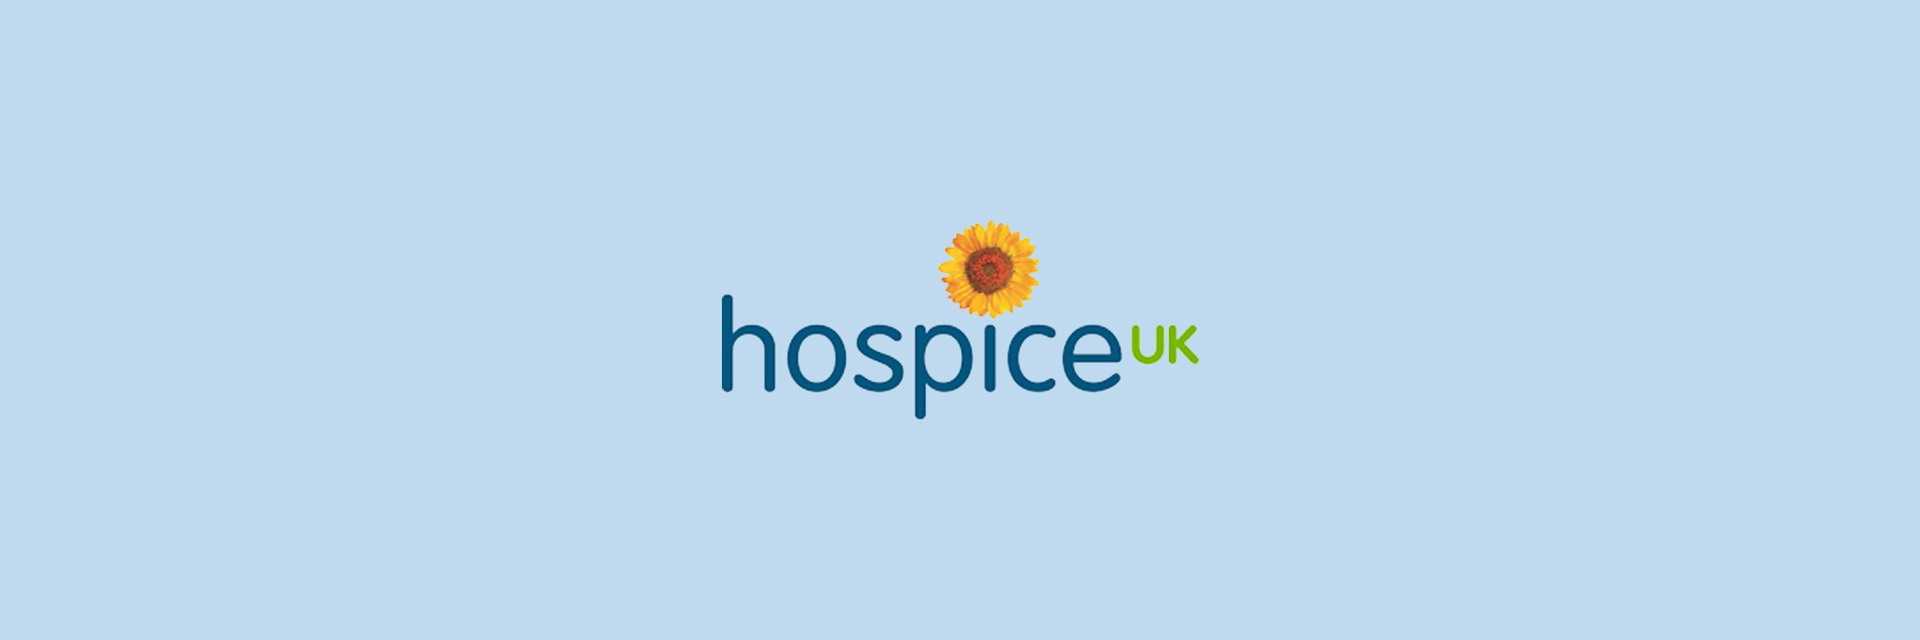 Hospice_UK_Logo_3000x1000